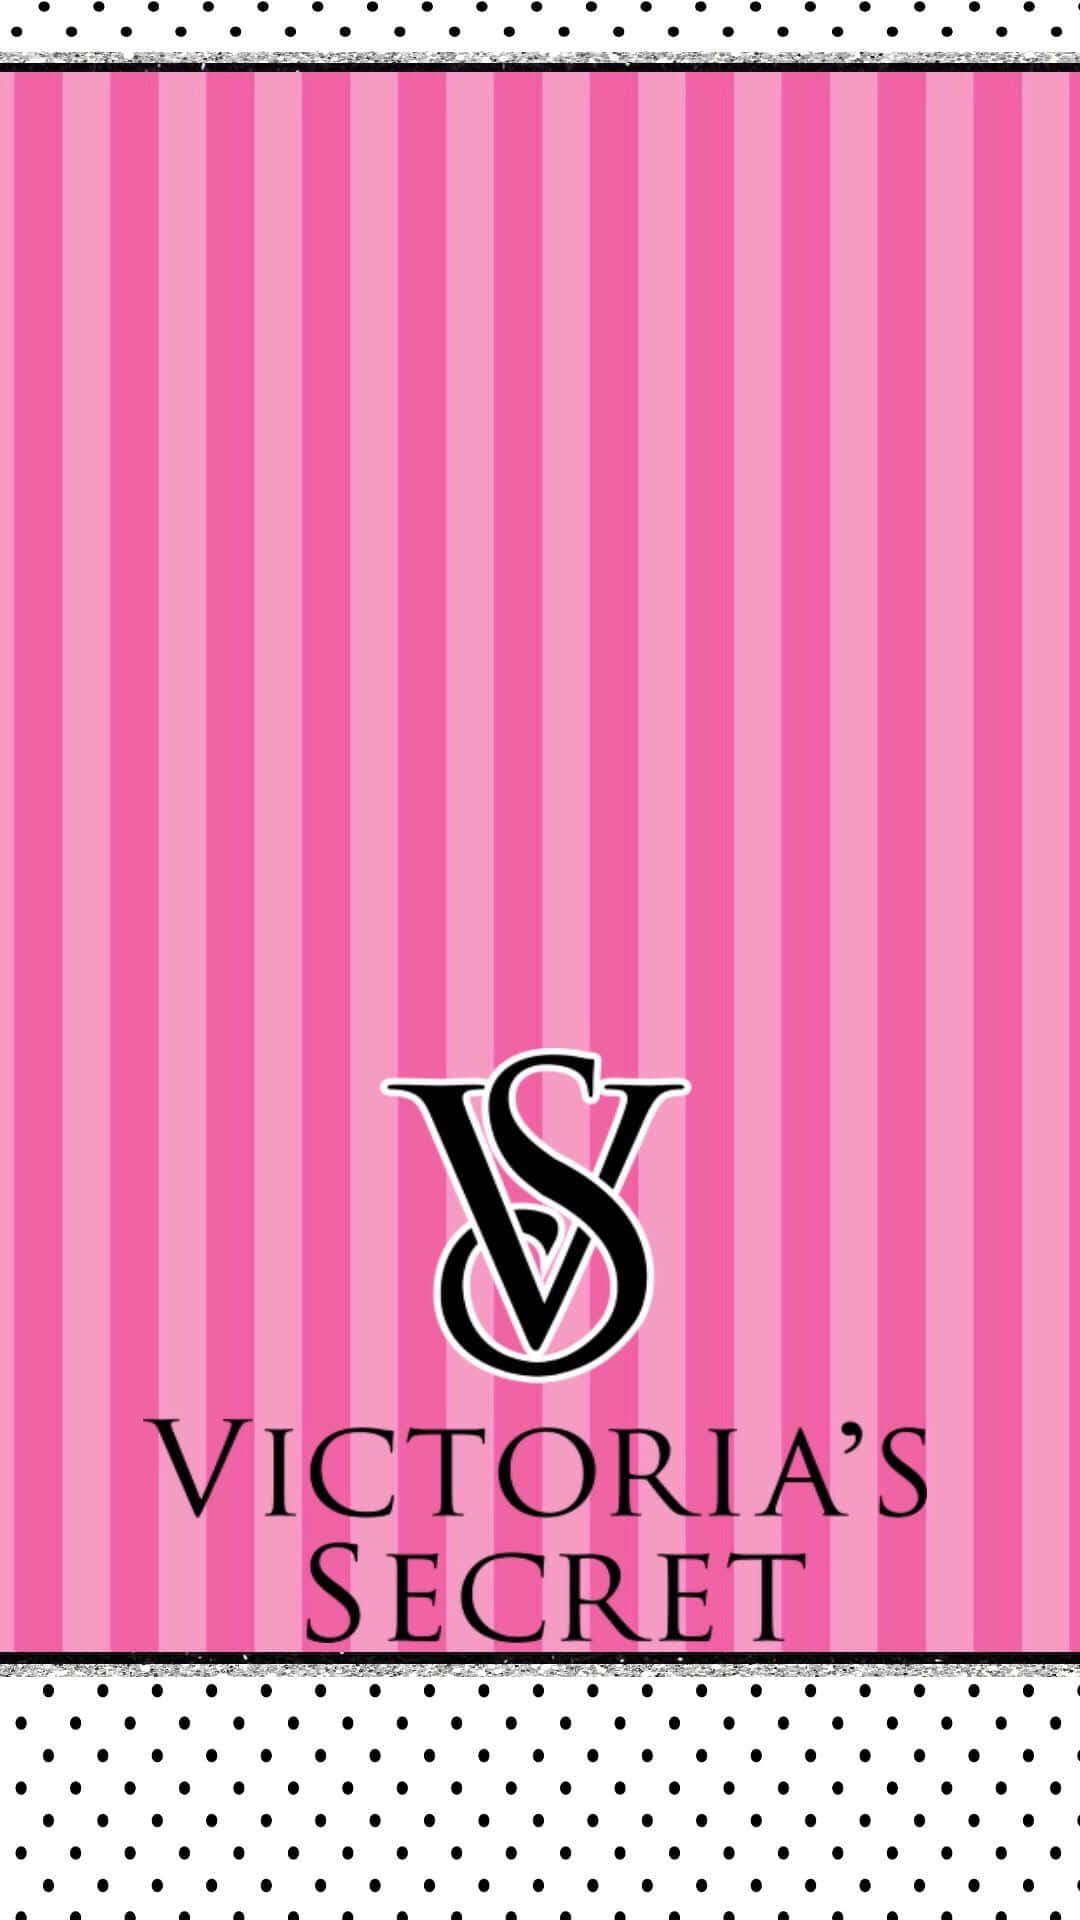 100+] Victoria Secret Wallpapers | Wallpapers.com